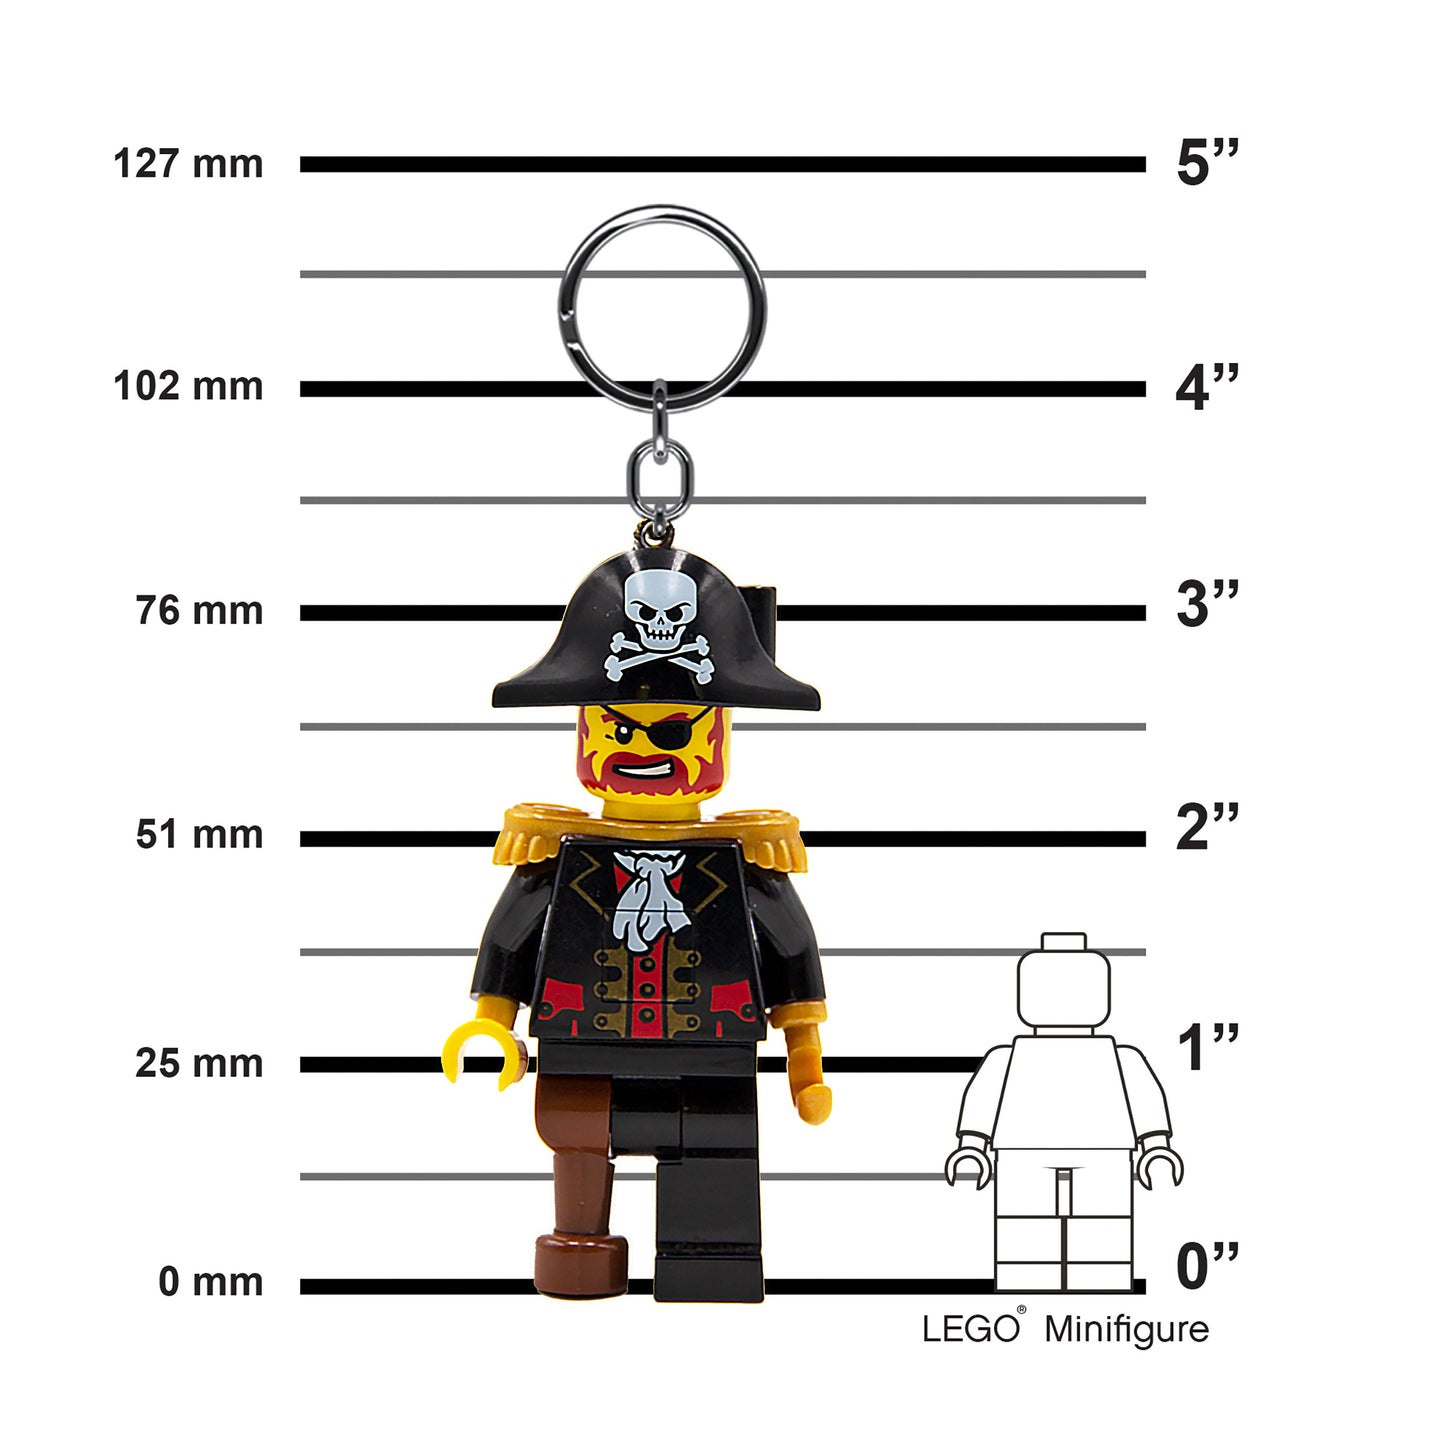 IQ LEGO® Iconic Captain Brickbeard LED luminous Key Chain (KE23H)